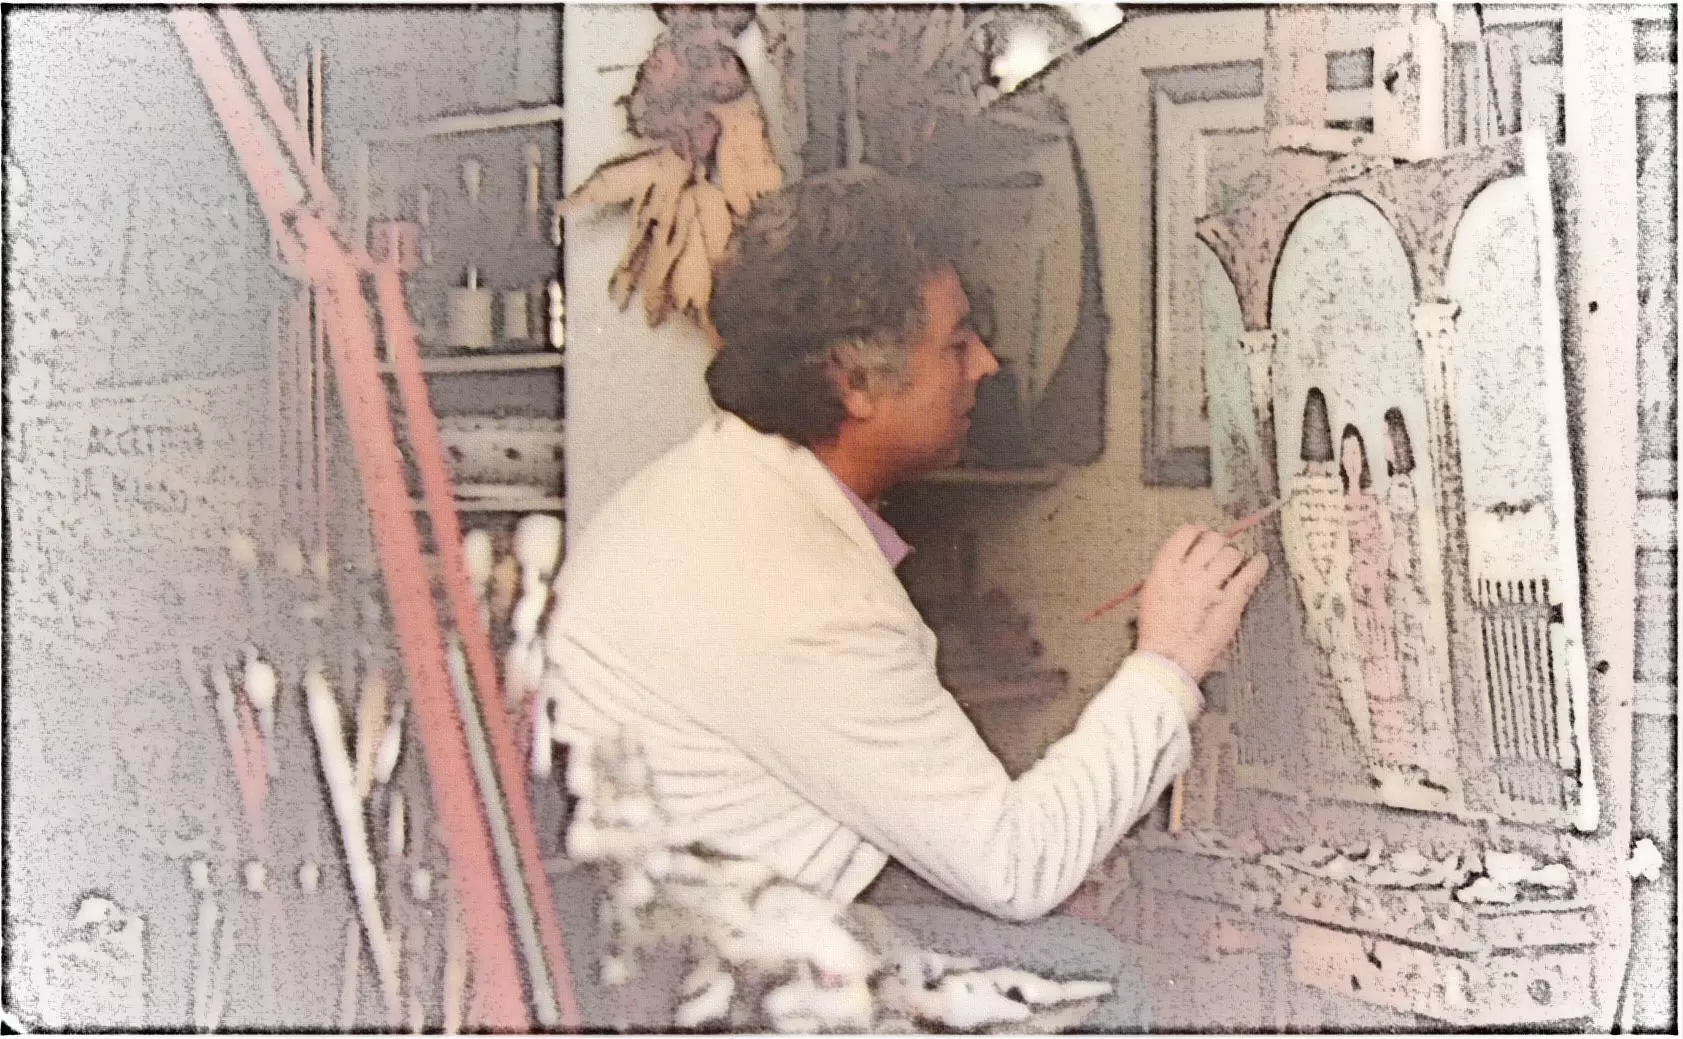 Ritratto del Maestro Rocco Barbarito in una elaborazione grafica di Leonardo Basile